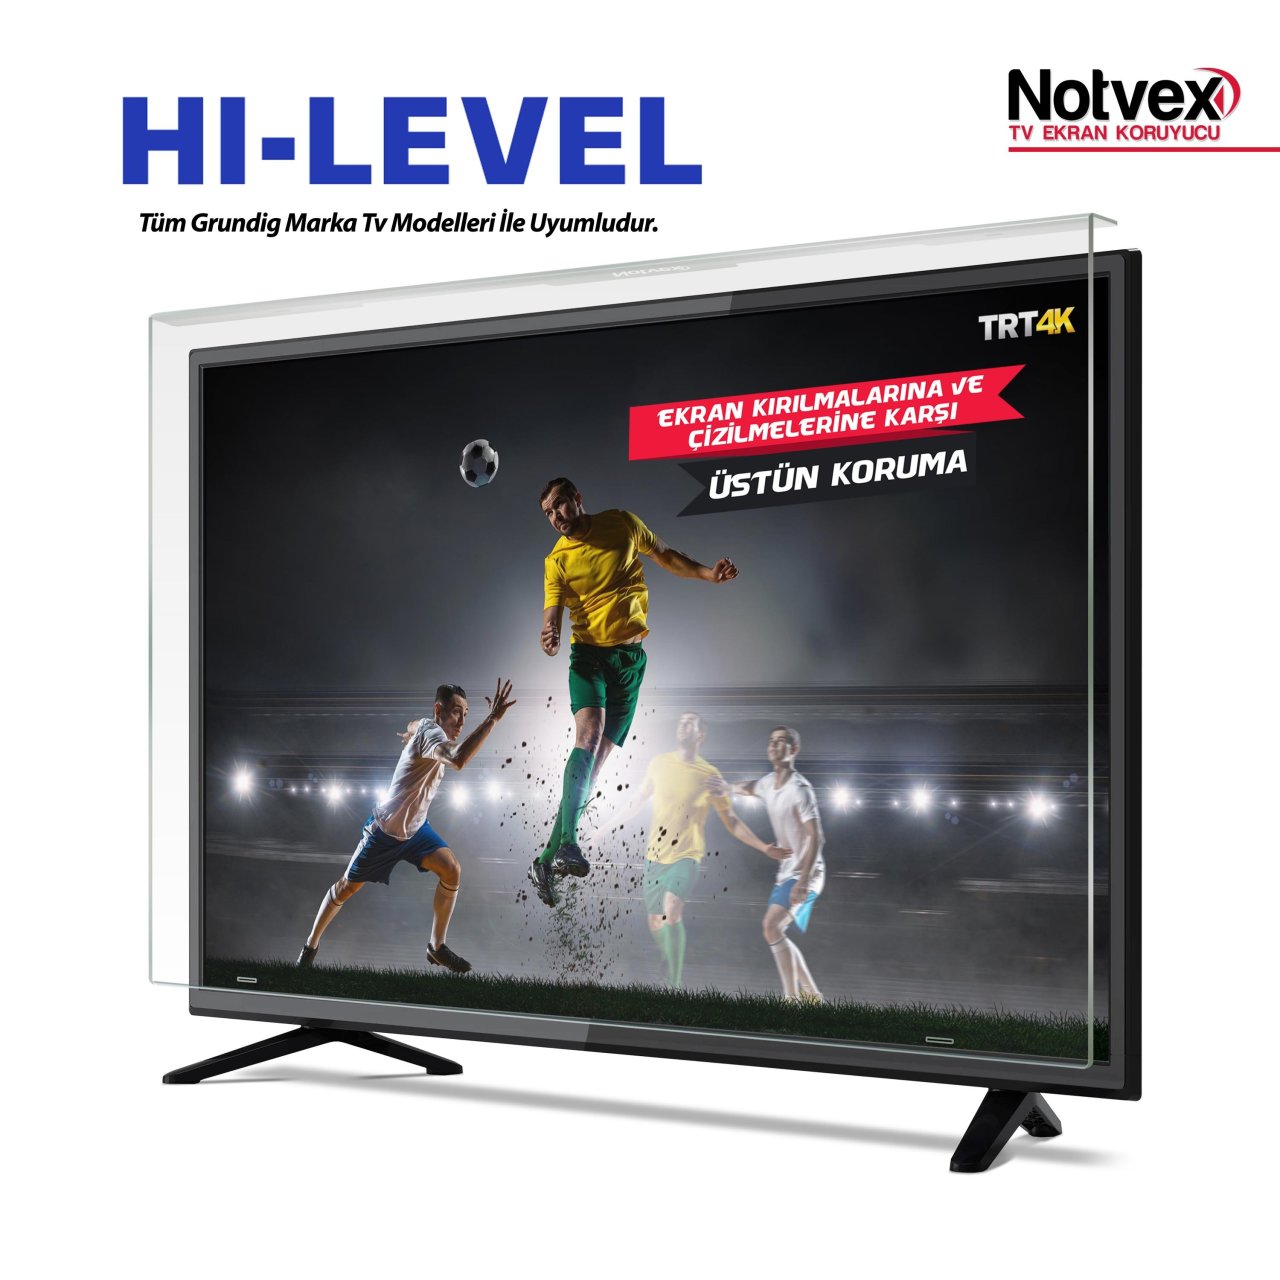 Hi-Level 43HL500 Uyumlu TV Ekran Koruyucu